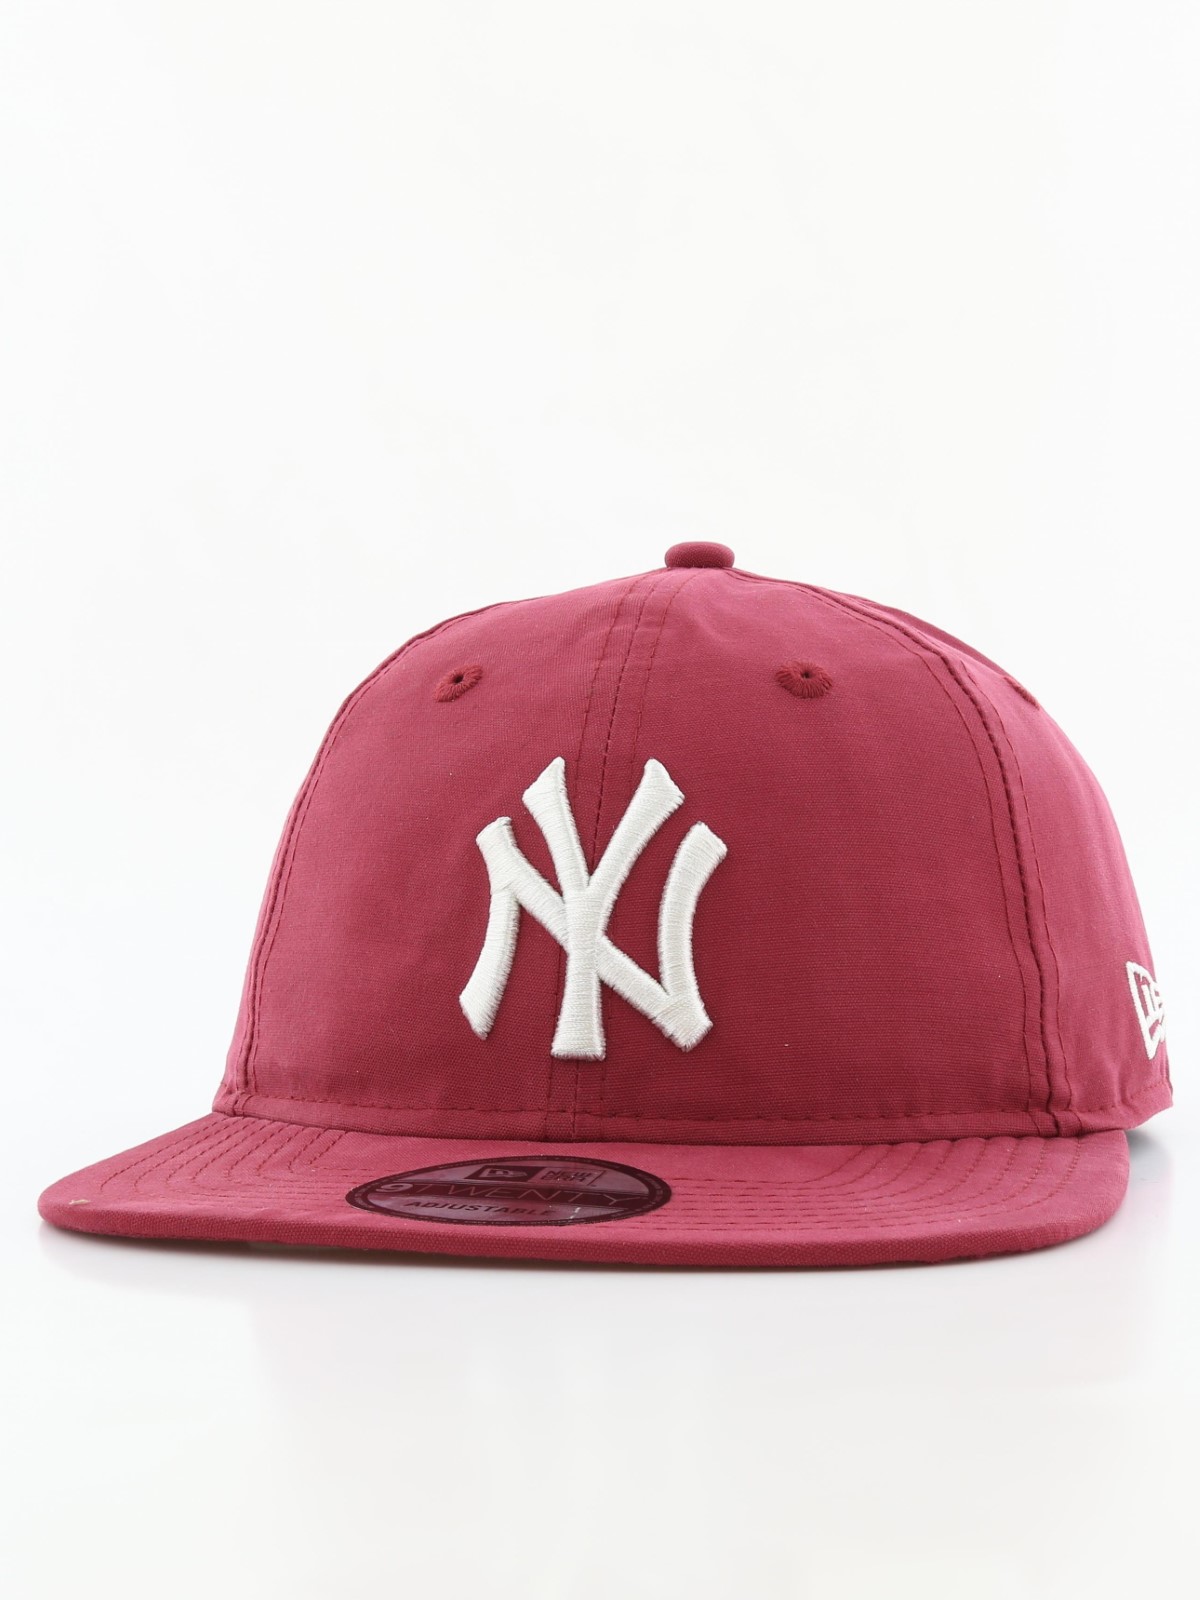 New Era Light Wt Nylon Packable New York Yankees Men's Cap Cardinal/White